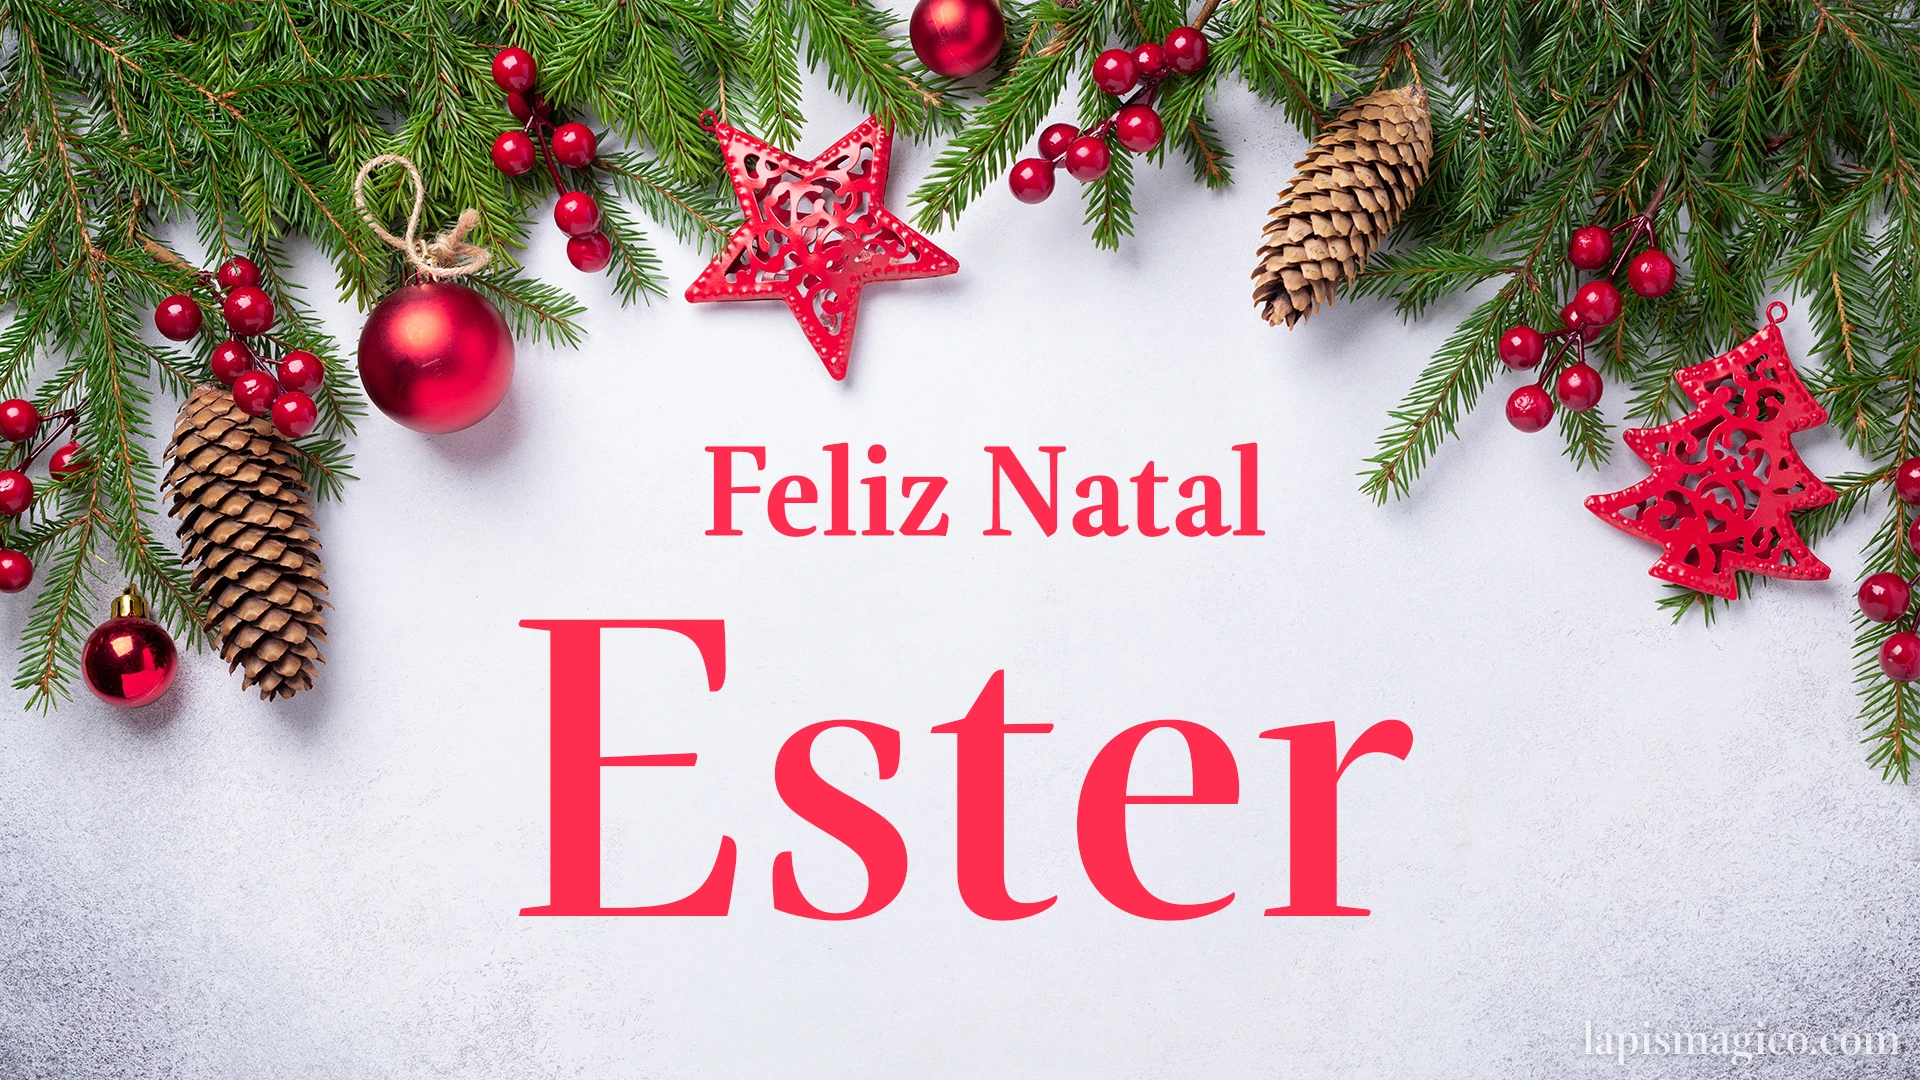 Oh Ester, cinco postais de Feliz Natal Postal com o teu nome